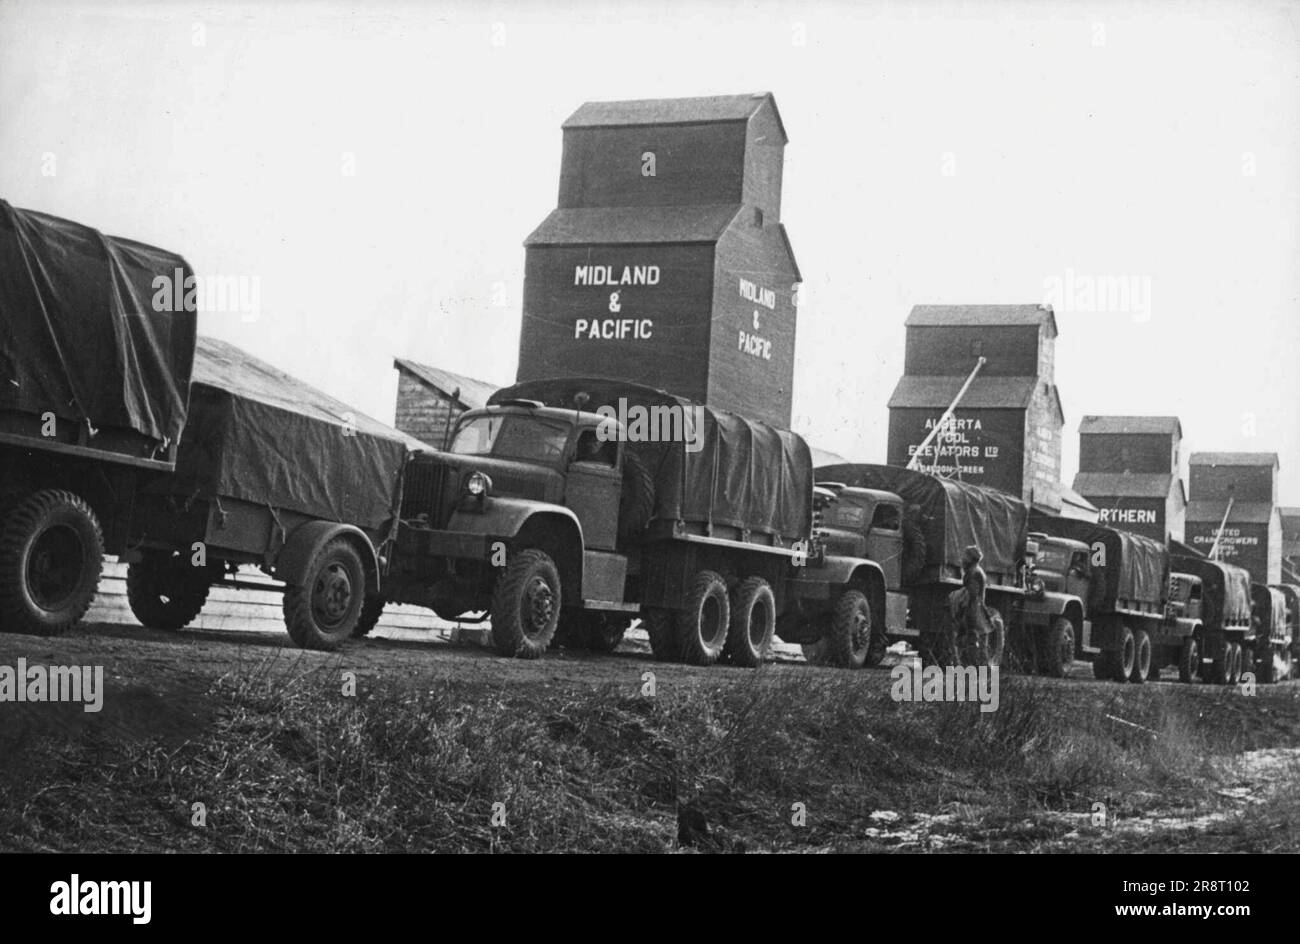 STATI UNITI Autostrada per Alaska -- Un convoglio degli Stati Uniti I camion dell'esercito passano gli elevatori canadesi del grano in qualche luogo lungo l'autostrada di Alcan fra gli Stati Uniti e l'Alaska. La strada è ora aperta e le munizioni e le forniture vengono trasportate ai posti militari nell'estremo nord. Marzo 28, 1943. (Foto di Interphoto News Pictures, Inc.) Foto Stock